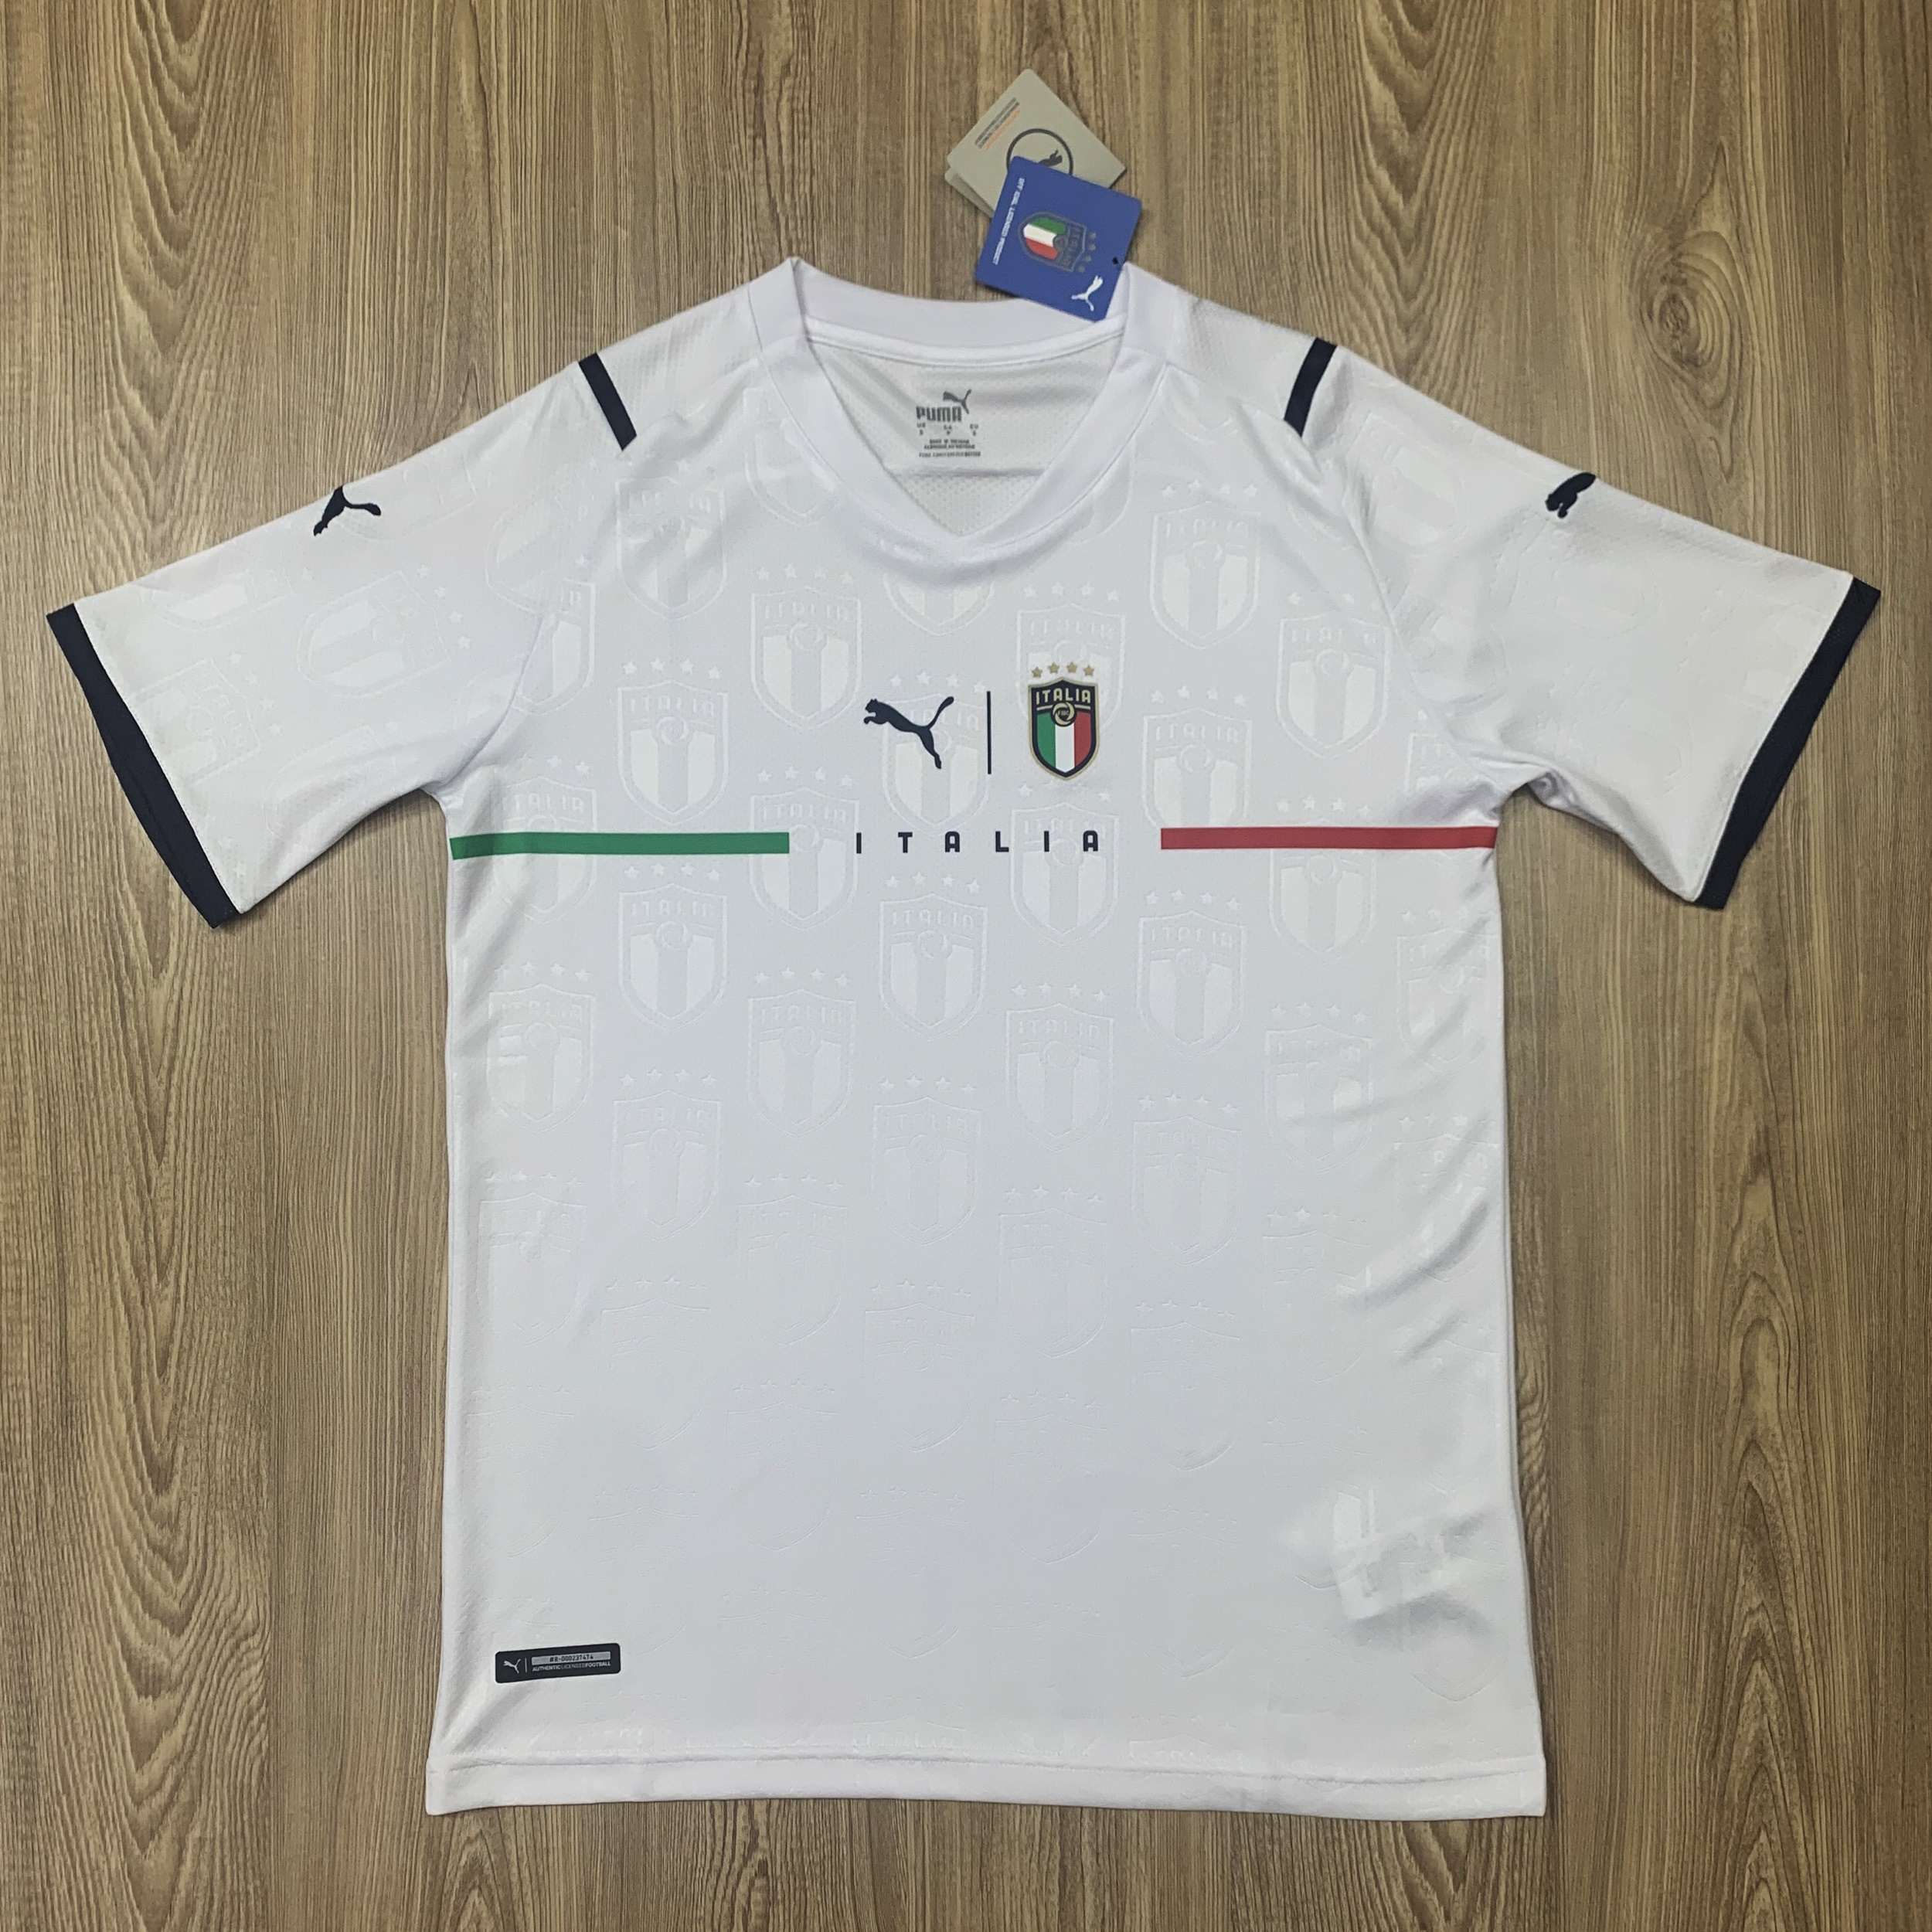 ใหม่!! Italy FOOTBALL SHIRT SOCCER JERSEY เสื้อบอล เสื้อฟุตบอลชาย เสื้อฟุตบอล เสื้อทีม อิตาลี ฤดูกาล 2022เกรด AAA